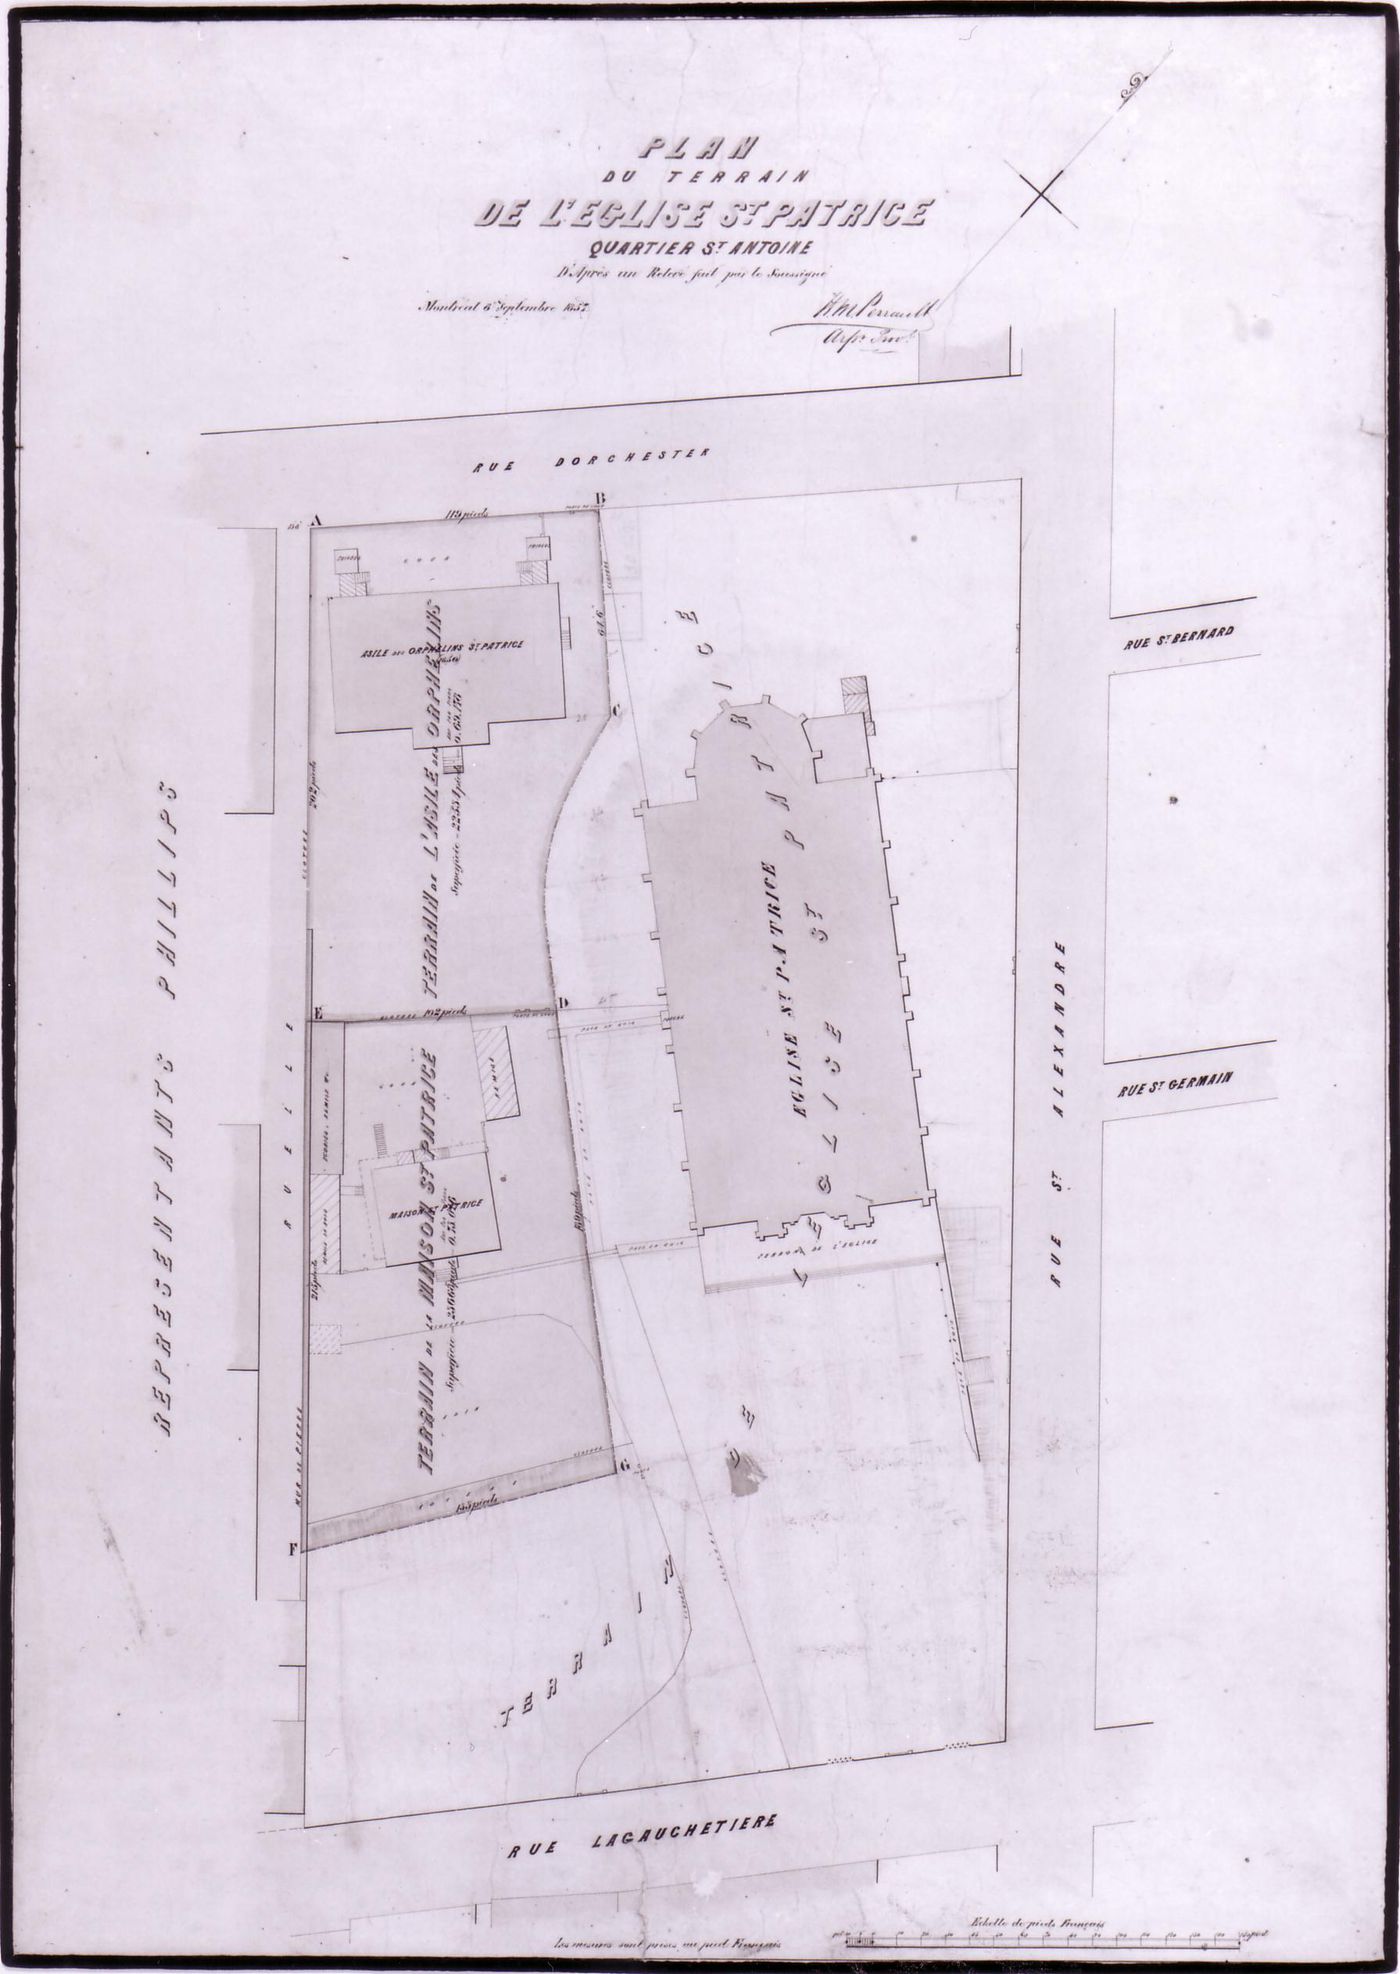 Site plan of St. Patrick's Church, Montréal